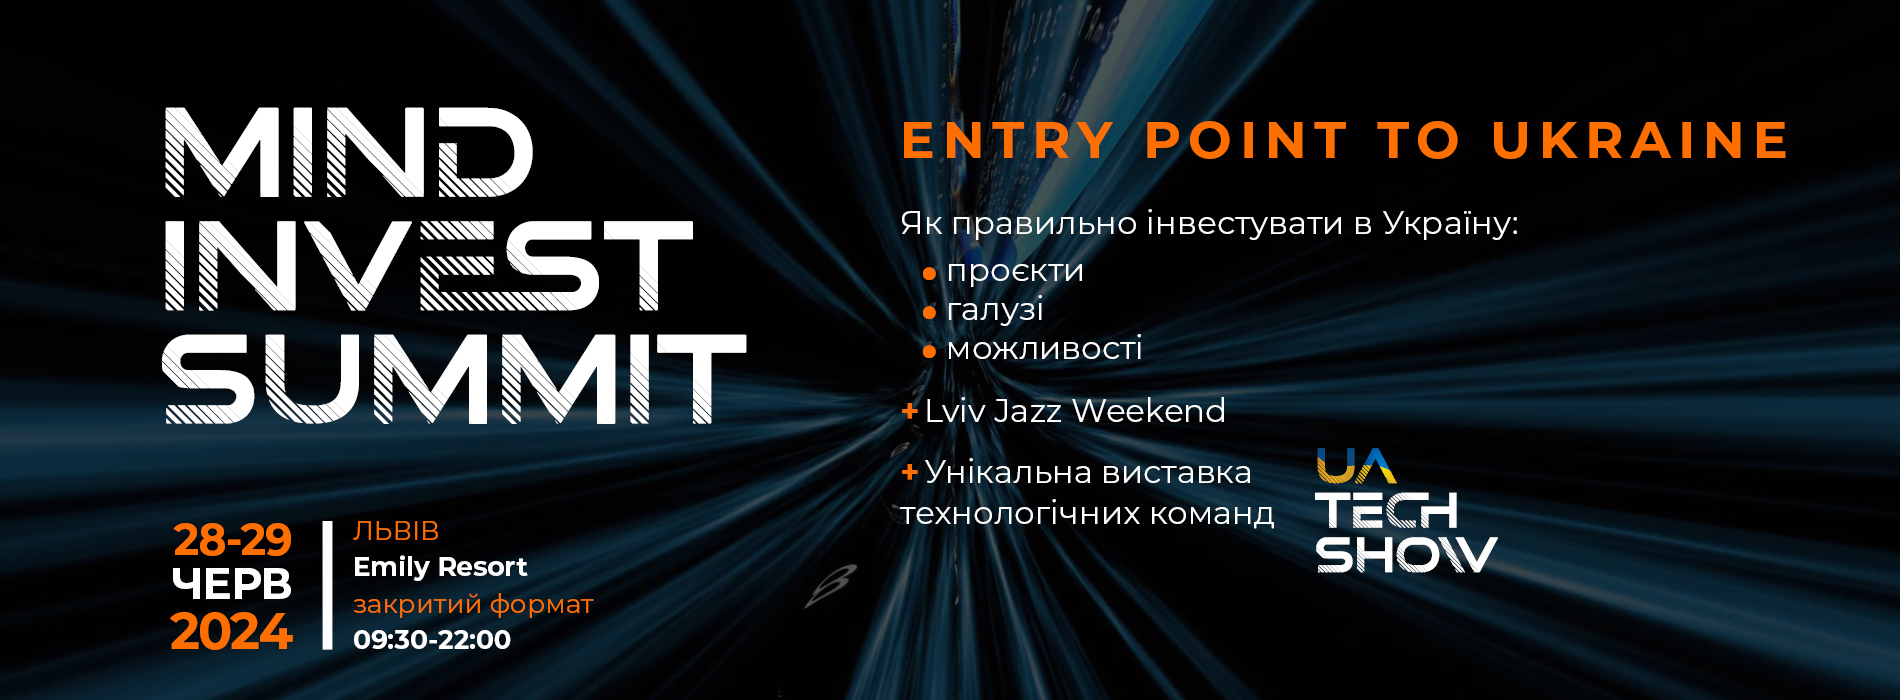 Mind Invest Summit: Entry Point to Ukraine. Investing in Ukraine Properly